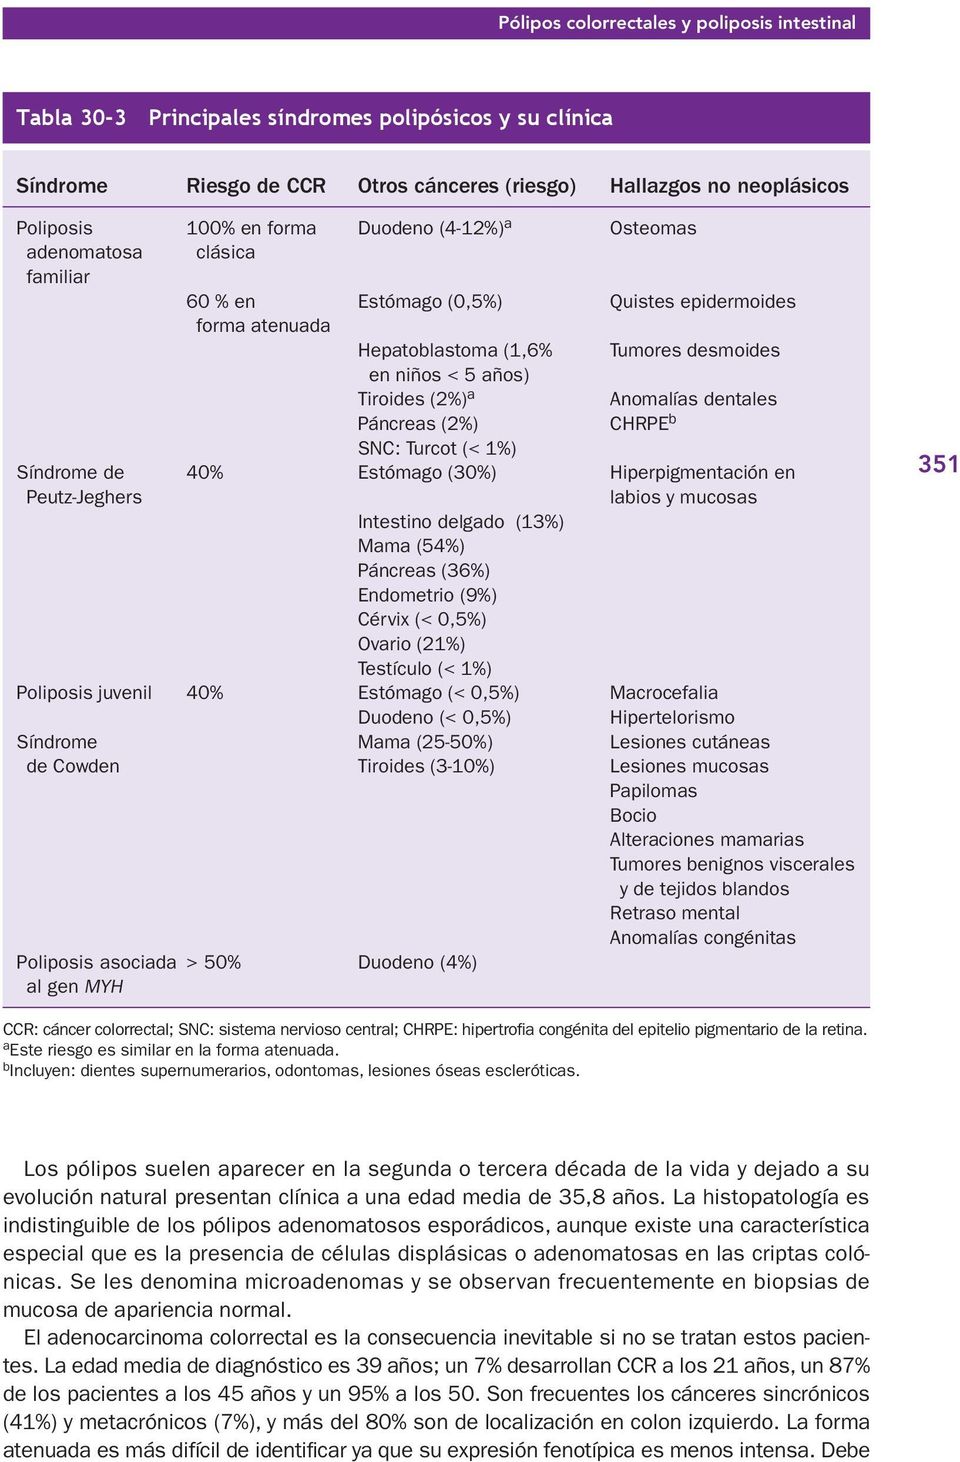 dentales Páncreas (2%) CHRPE b SNC: Turcot (< 1%) Síndrome de 40% Estómago (30%) Hiperpigmentación en Peutz-Jeghers labios y mucosas Intestino delgado (13%) Mama (54%) Páncreas (36%) Endometrio (9%)